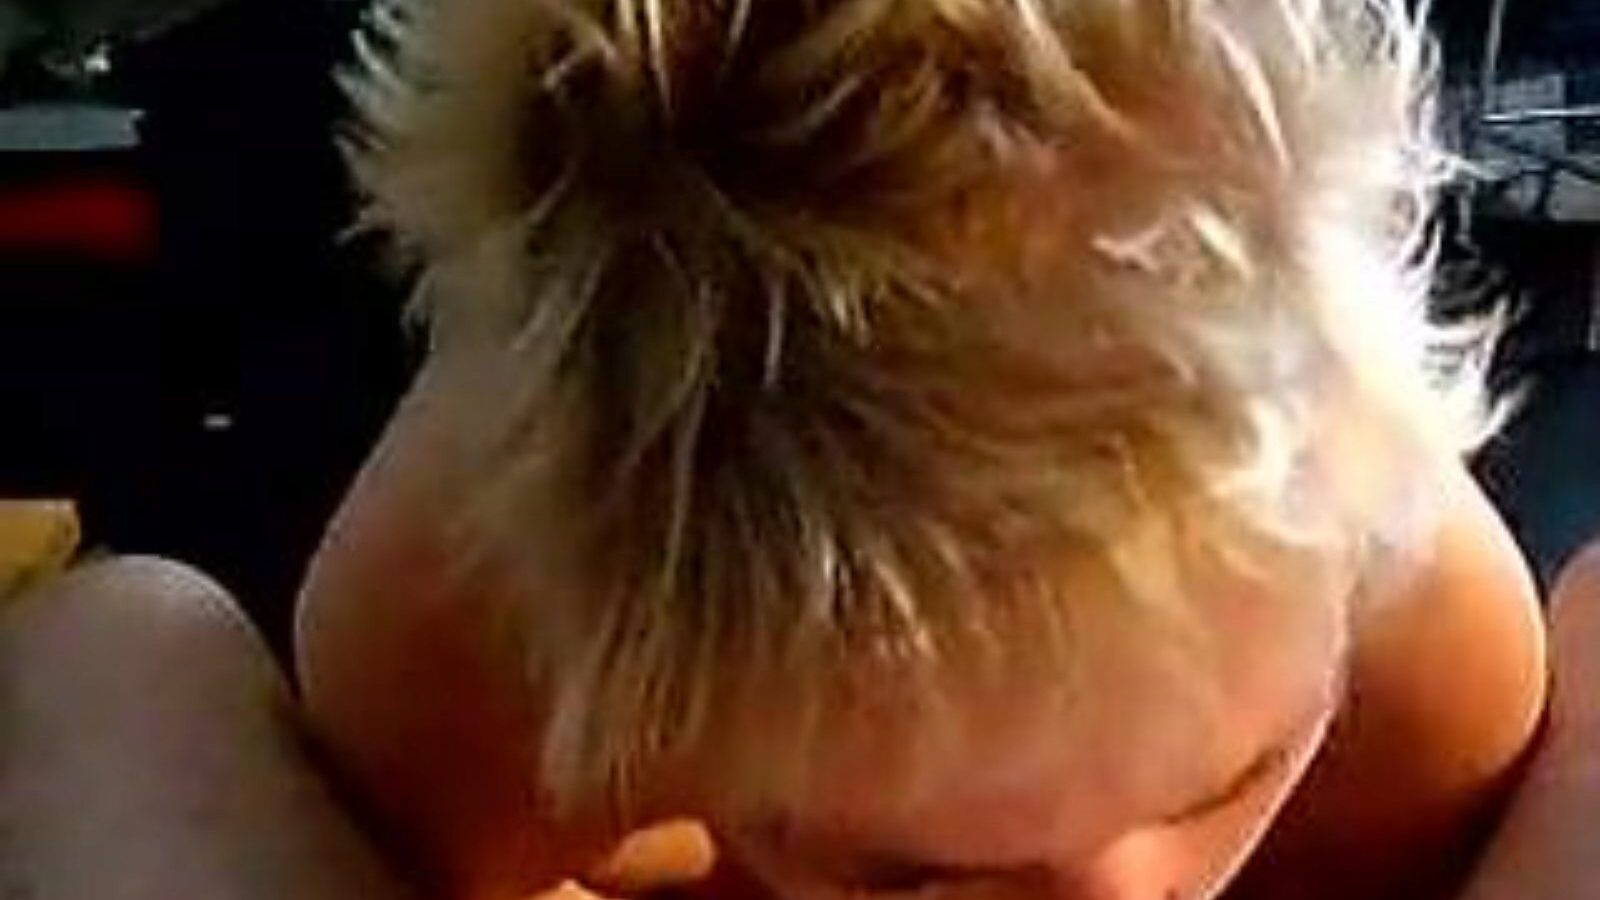 leuke dame: vidéo porno maison et vieille fille a6 - xhamster regarde le film fuckfest de leuke dame tube gratuitement sur xhamster, avec la collection la plus chaude de concerts de clips pornographiques hollandais faits maison, vieille fille et suceurs